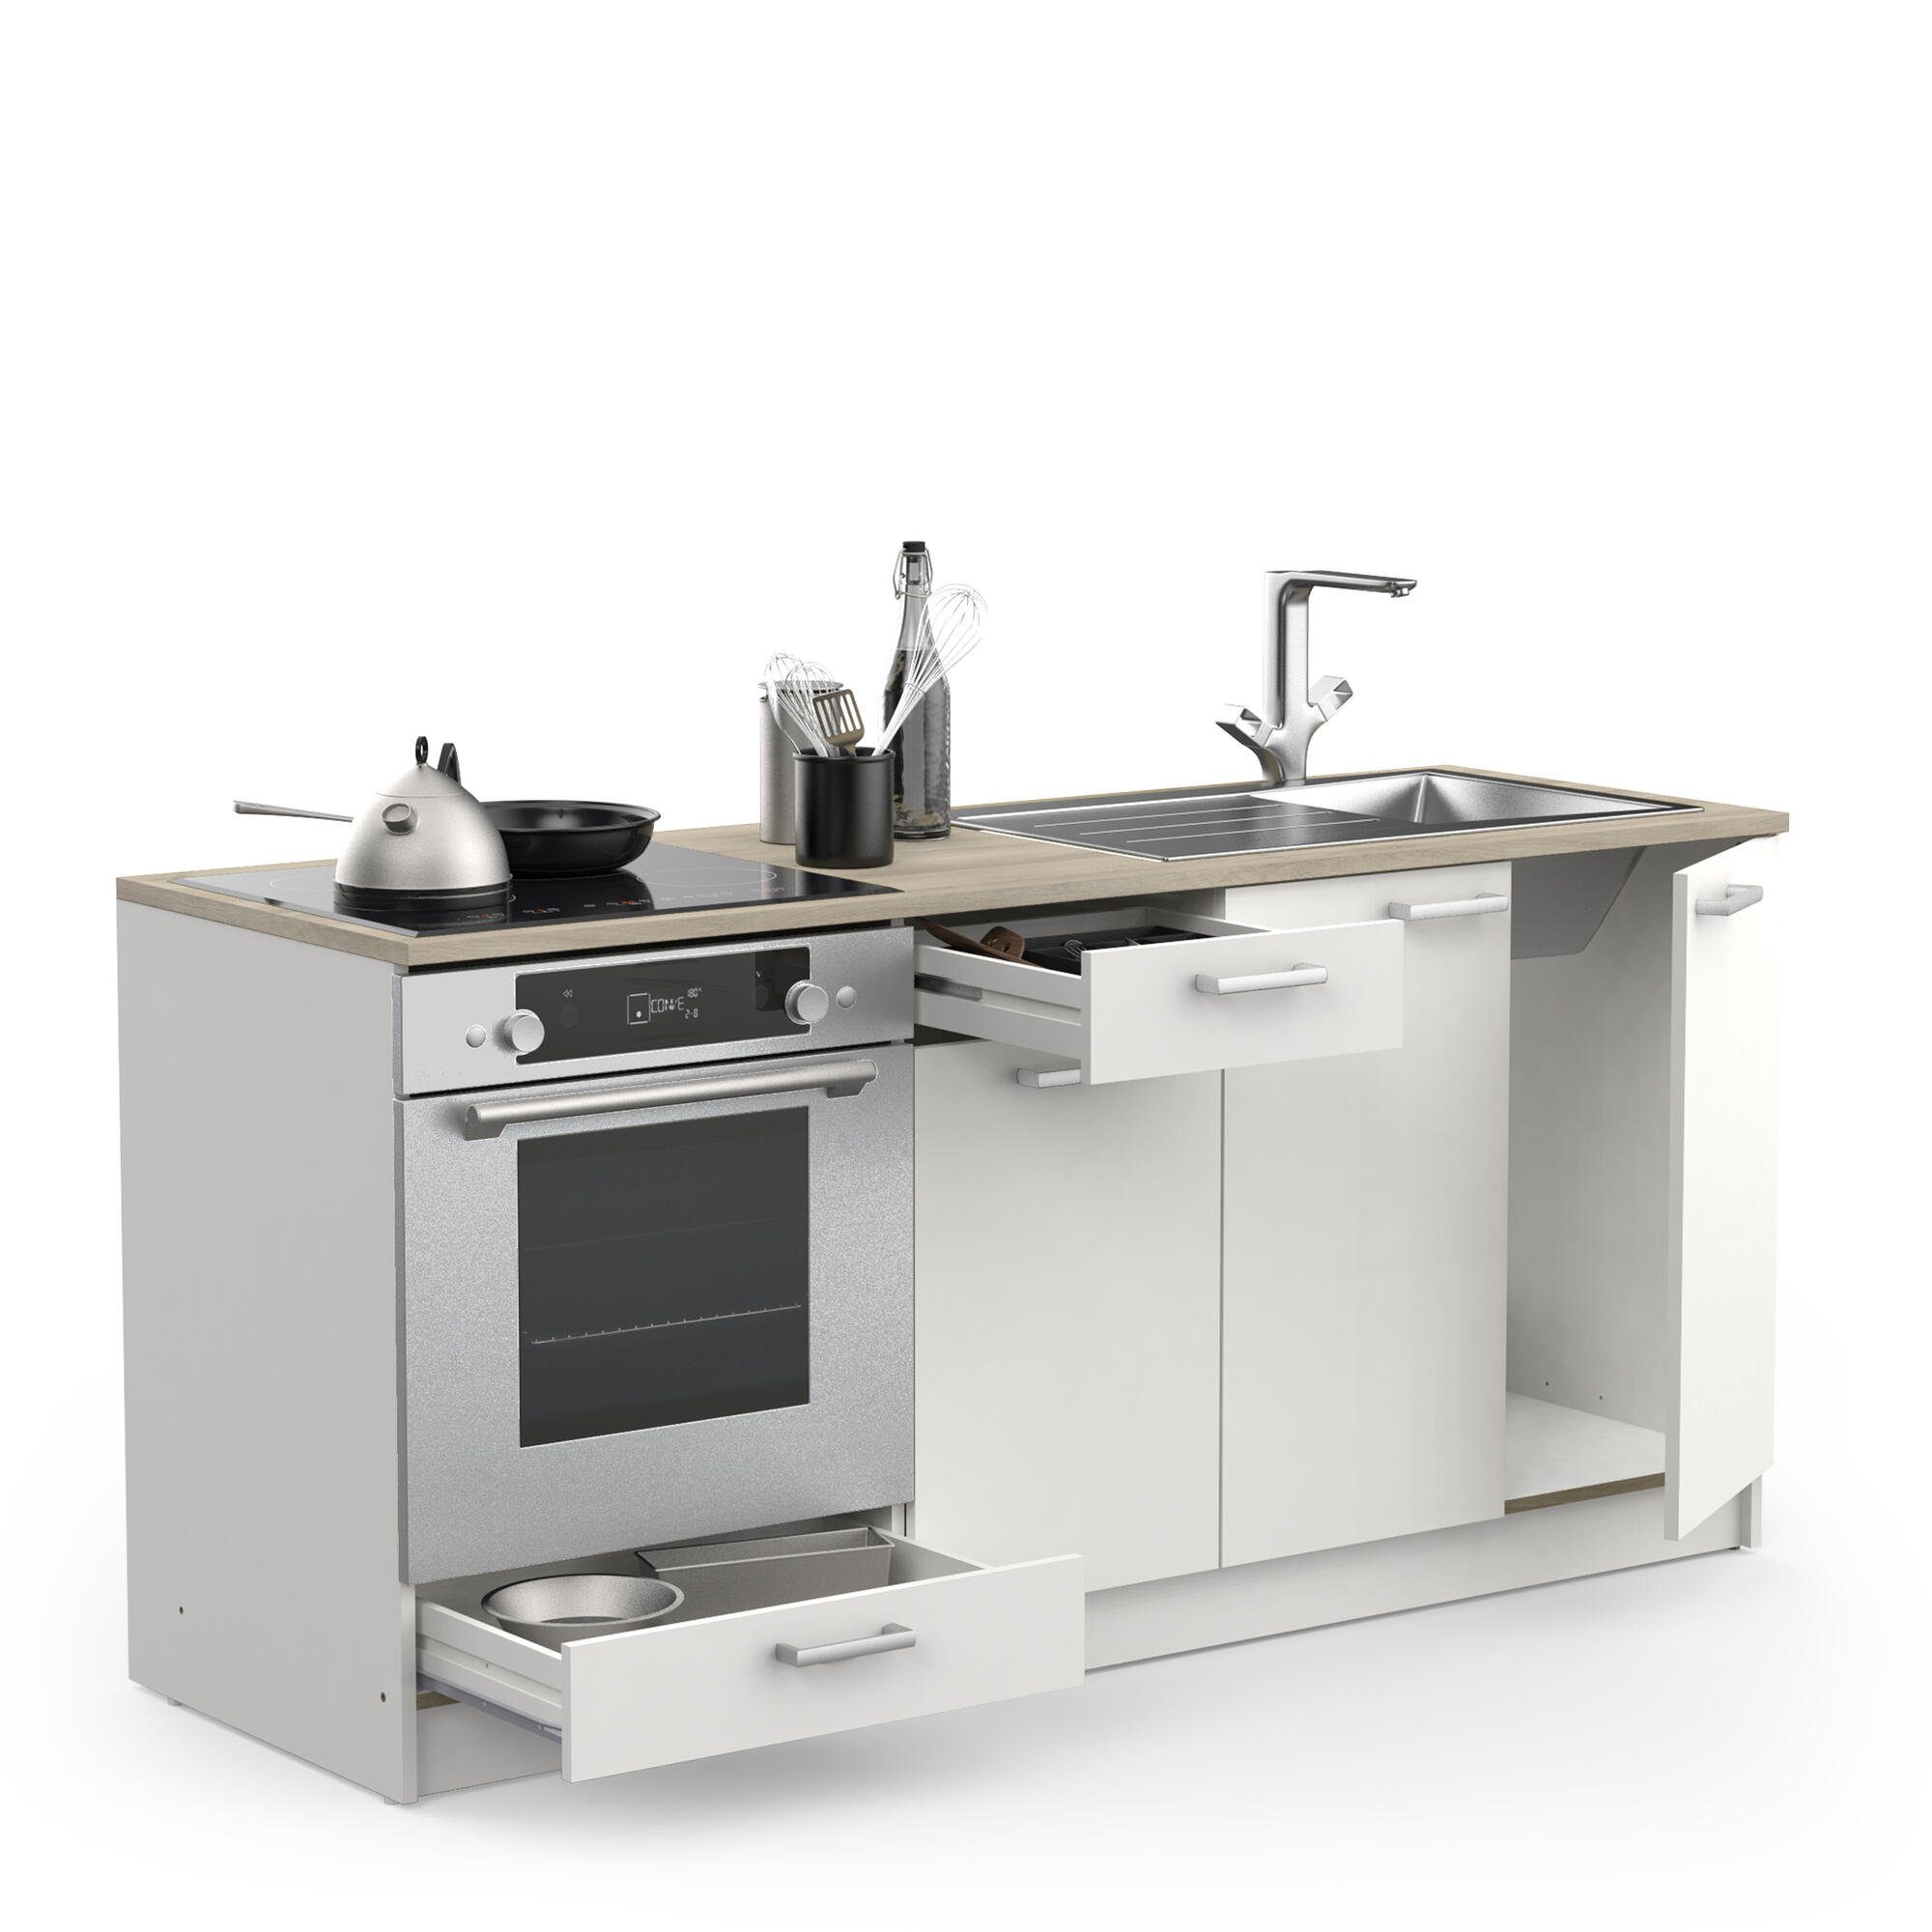 180cm Breite Küche habeig variabel Küchenbuffet Unterschrank Küchenschrank Kompaktküche Singleküche